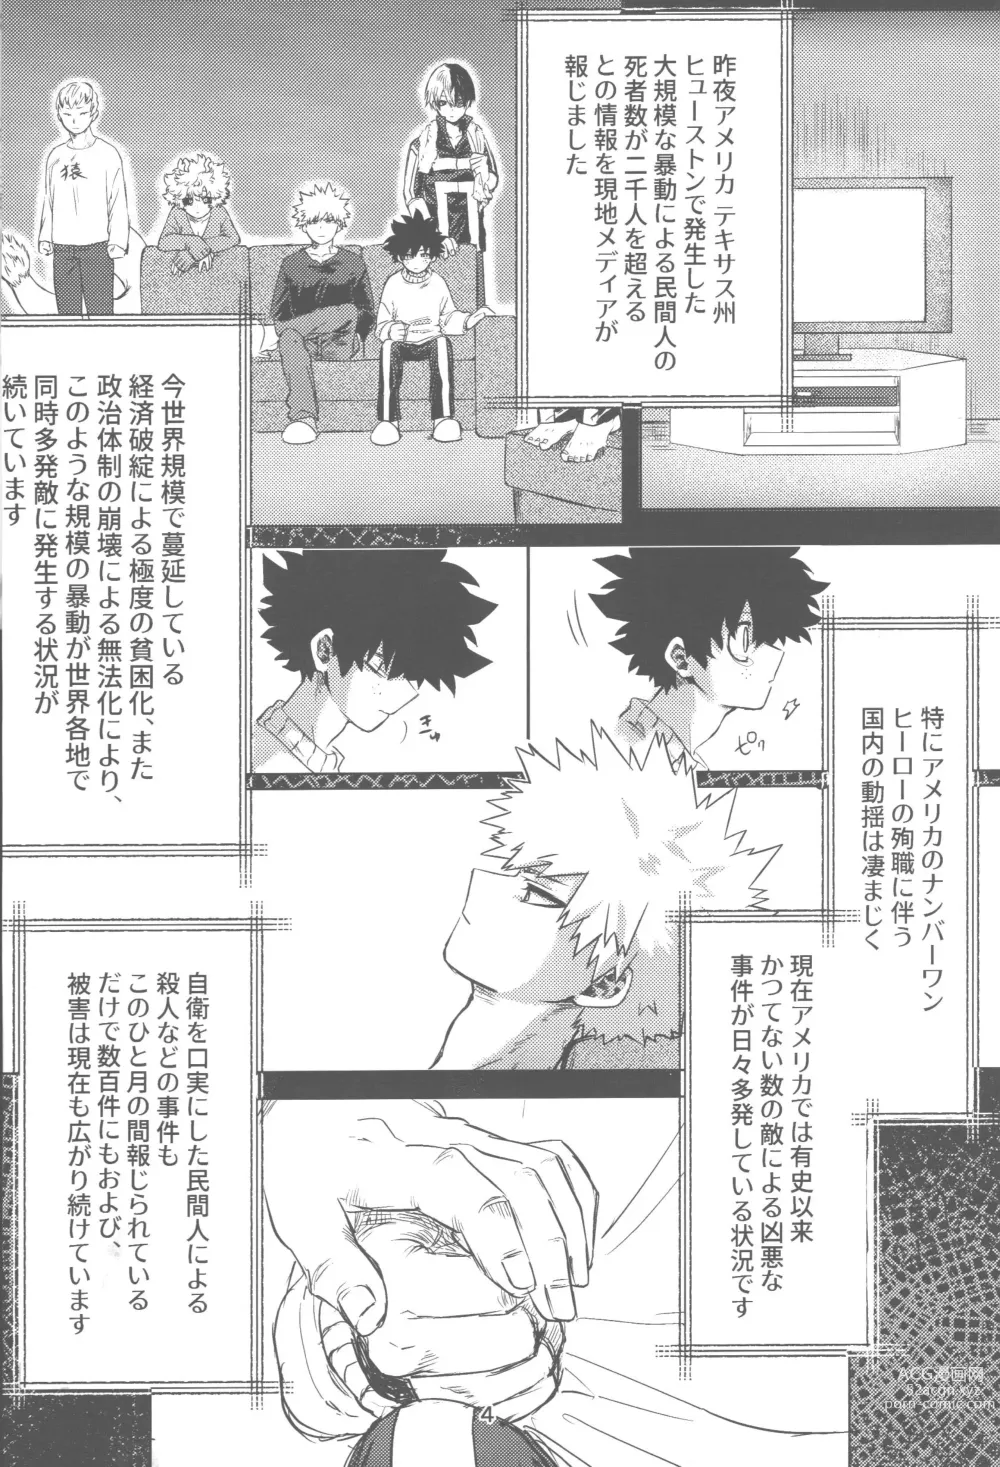 Page 5 of doujinshi Ore to Omae no Hajimete Monogatari